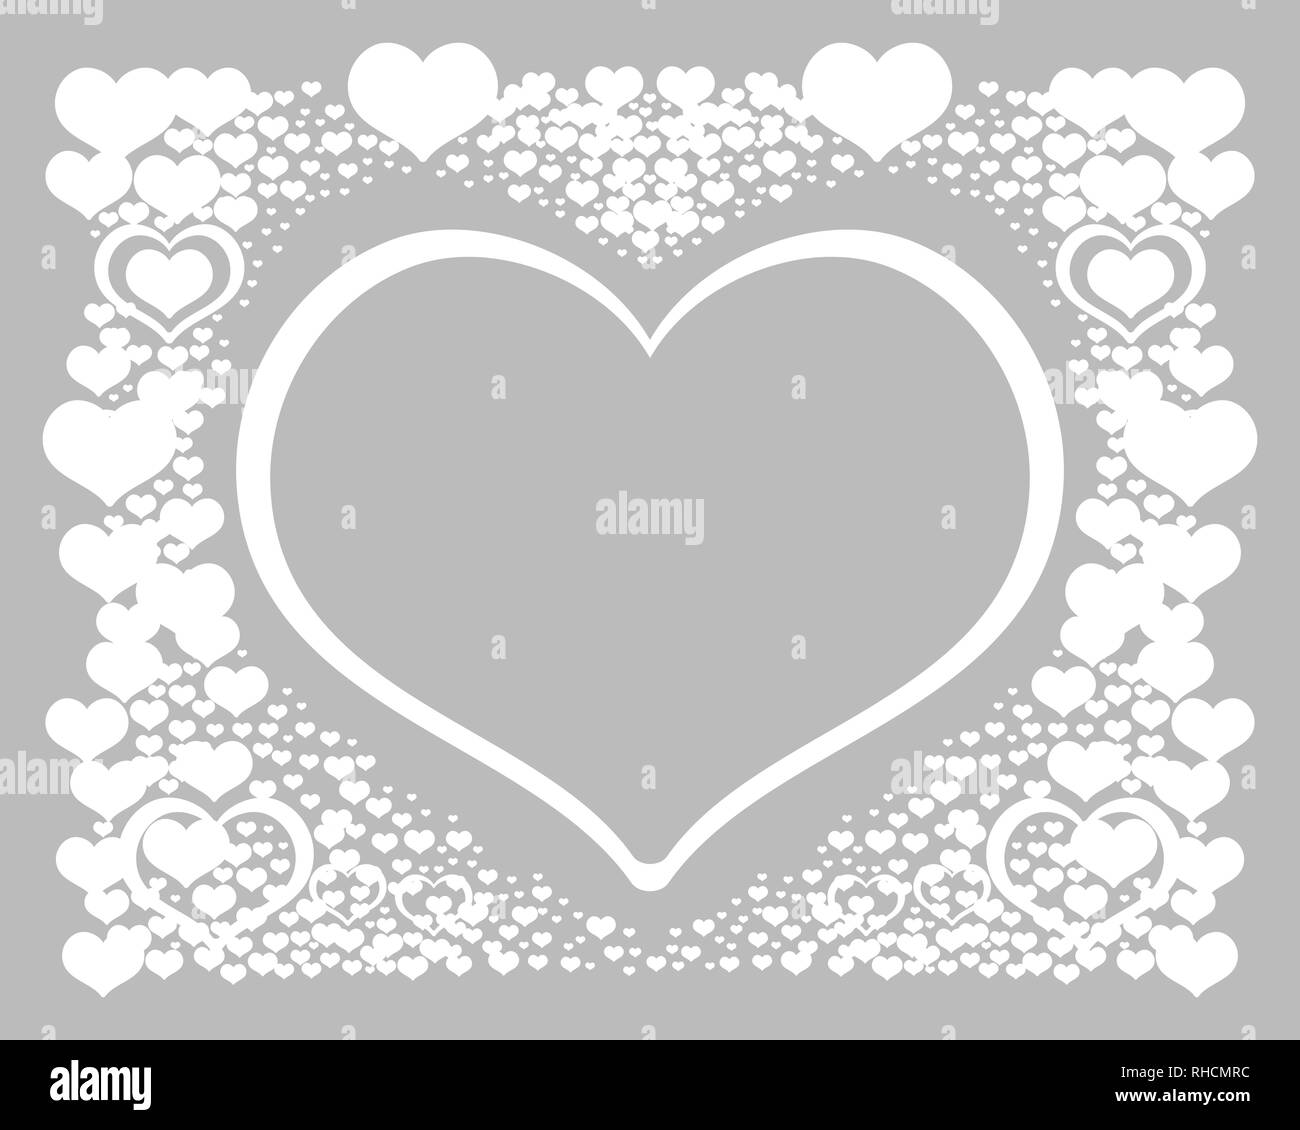 Zusammenfassung Hintergrund mit Herzen. Vector Illustration romantischen Rahmen. Valentines Banner mit weißen Herzen auf grauem Hintergrund. Vektor Postkarte für celeb Stock Vektor